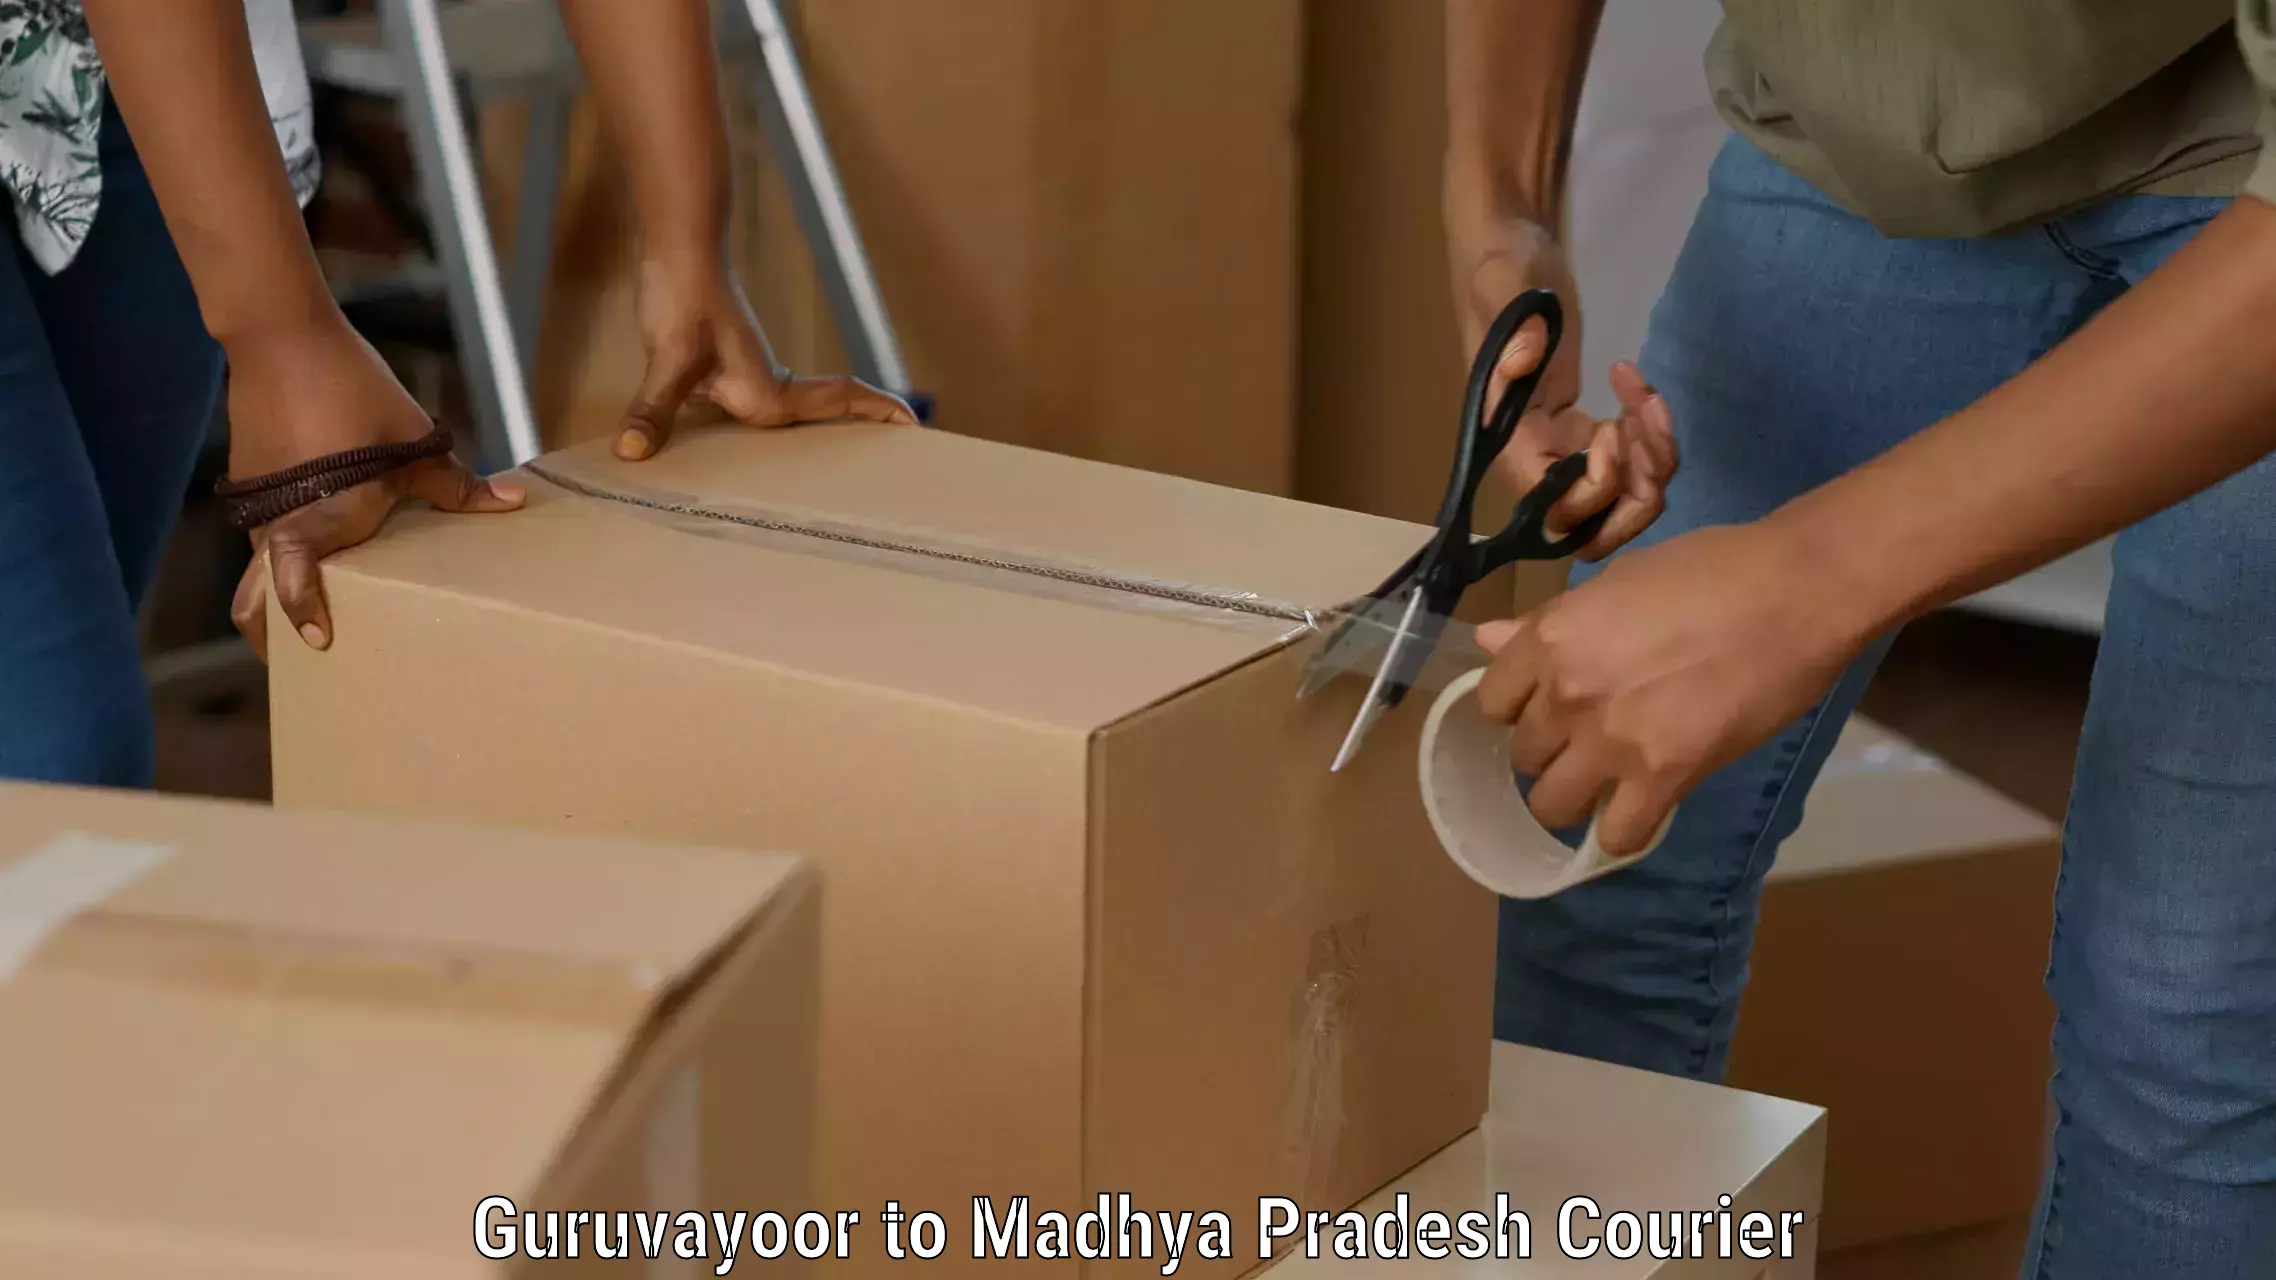 Courier service efficiency Guruvayoor to Madhya Pradesh